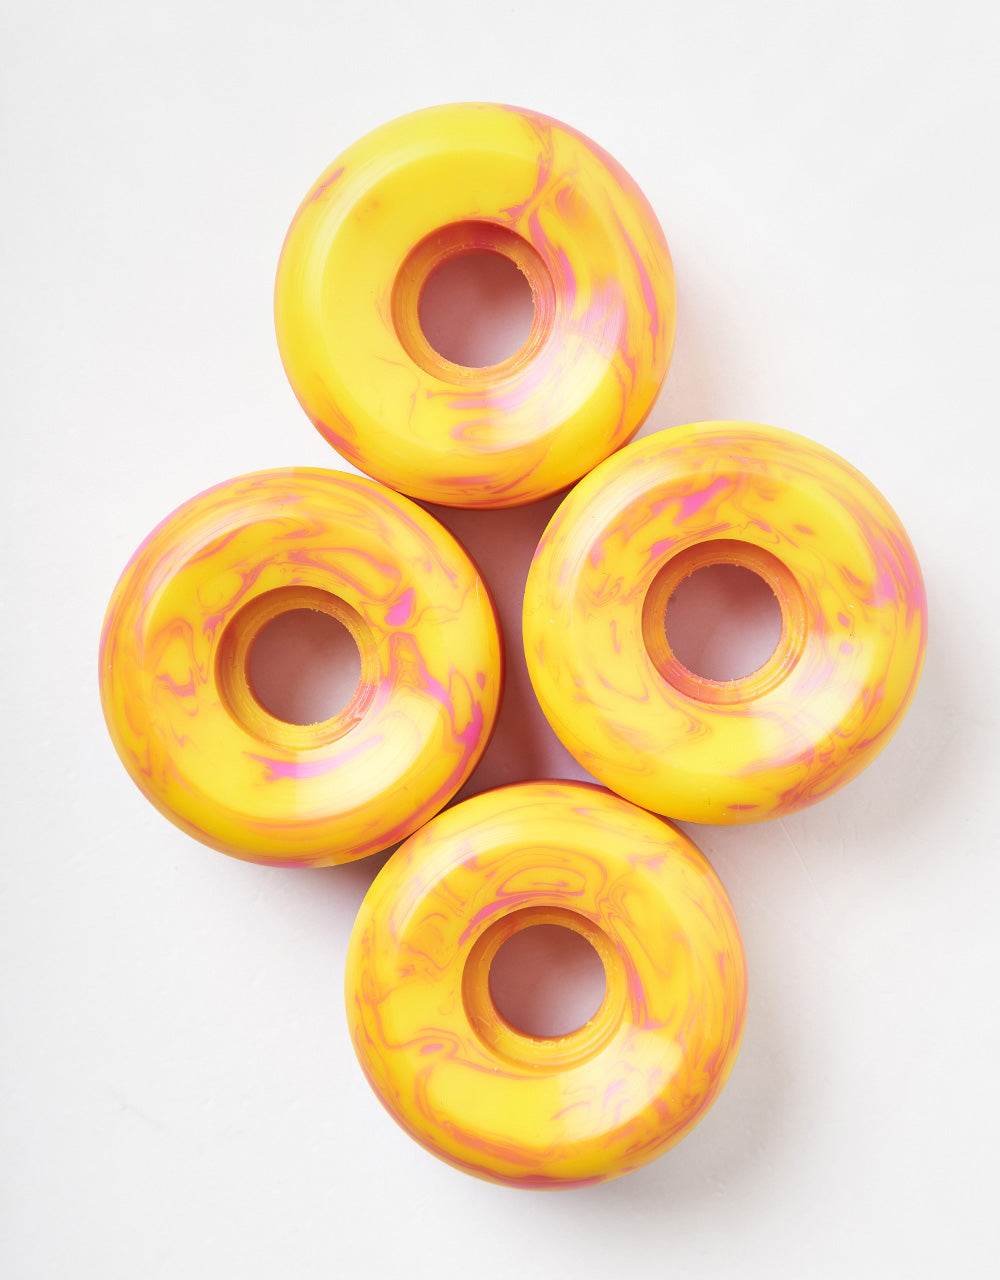 Orbs Specters Swirls Conical 99a Skateboard Wheels - 53mm